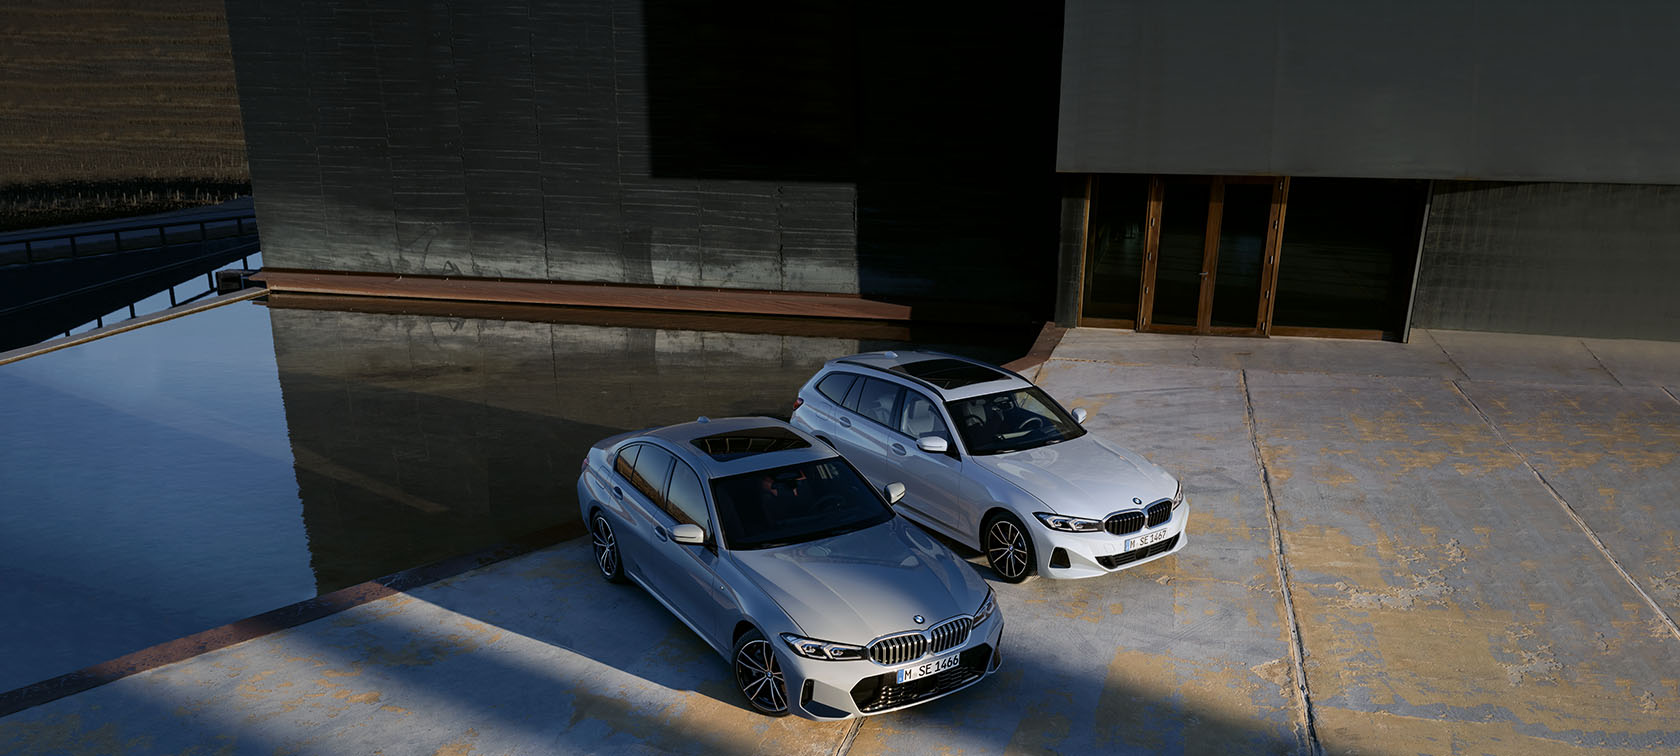 Autohaus Reier GmbH & Co. KG: BMW Fahrzeuge, Services, Angebote u.v.m.